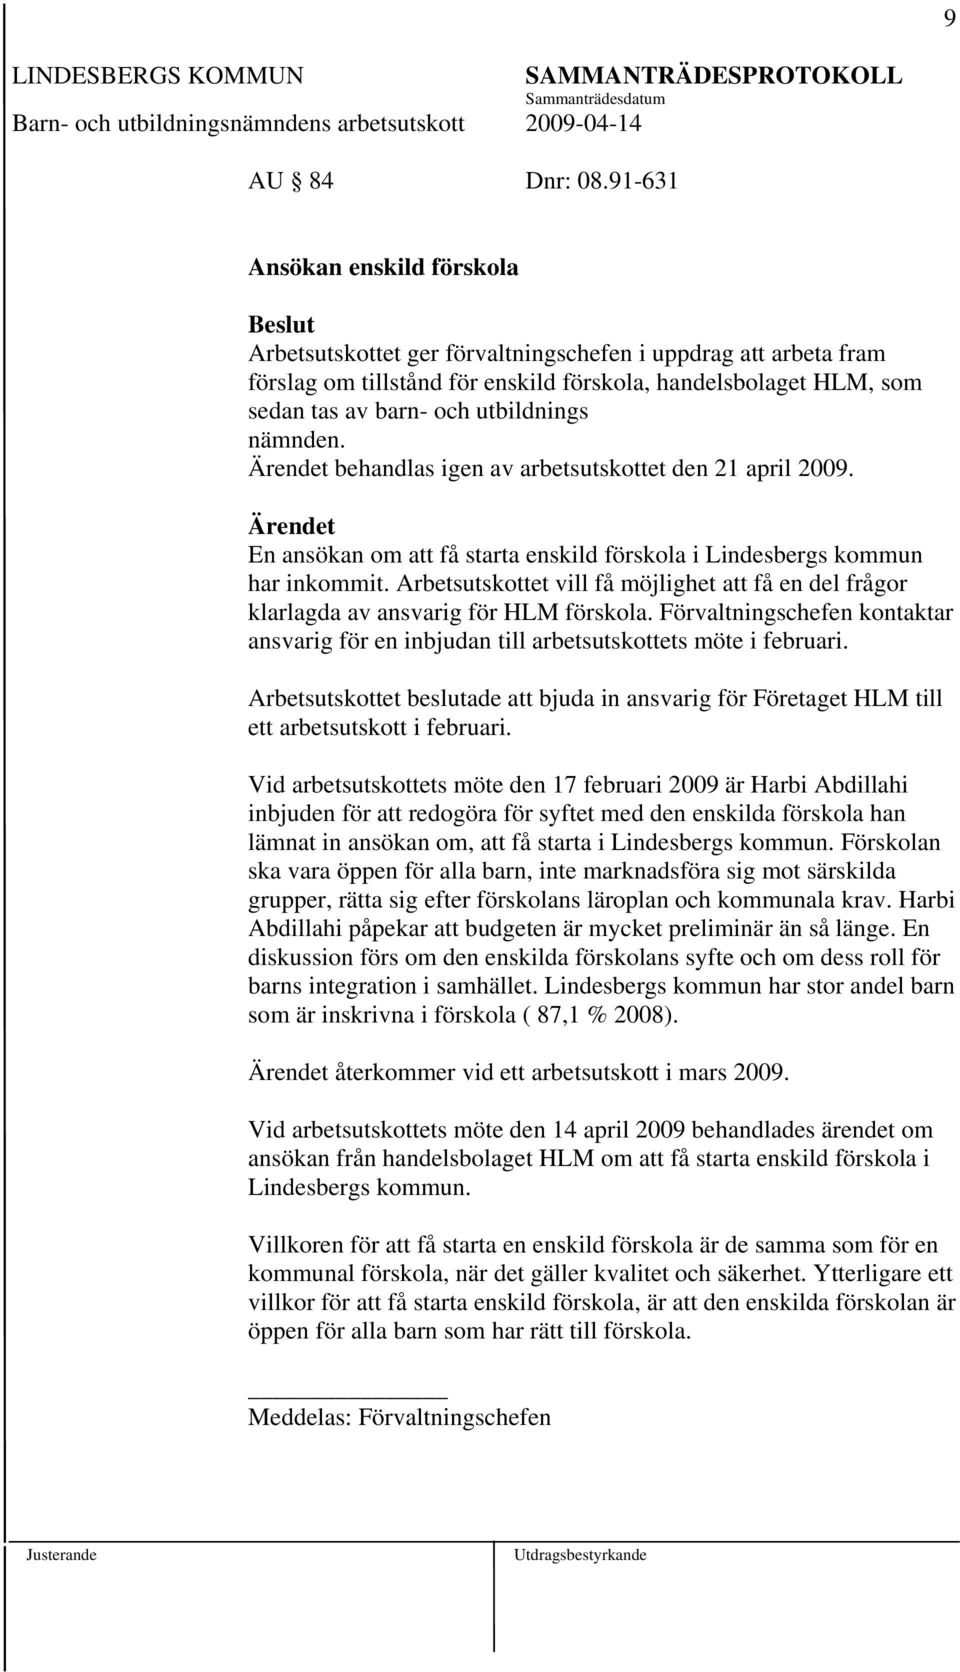 nämnden. behandlas igen av arbetsutskottet den 21 april 2009. En ansökan om att få starta enskild förskola i Lindesbergs kommun har inkommit.